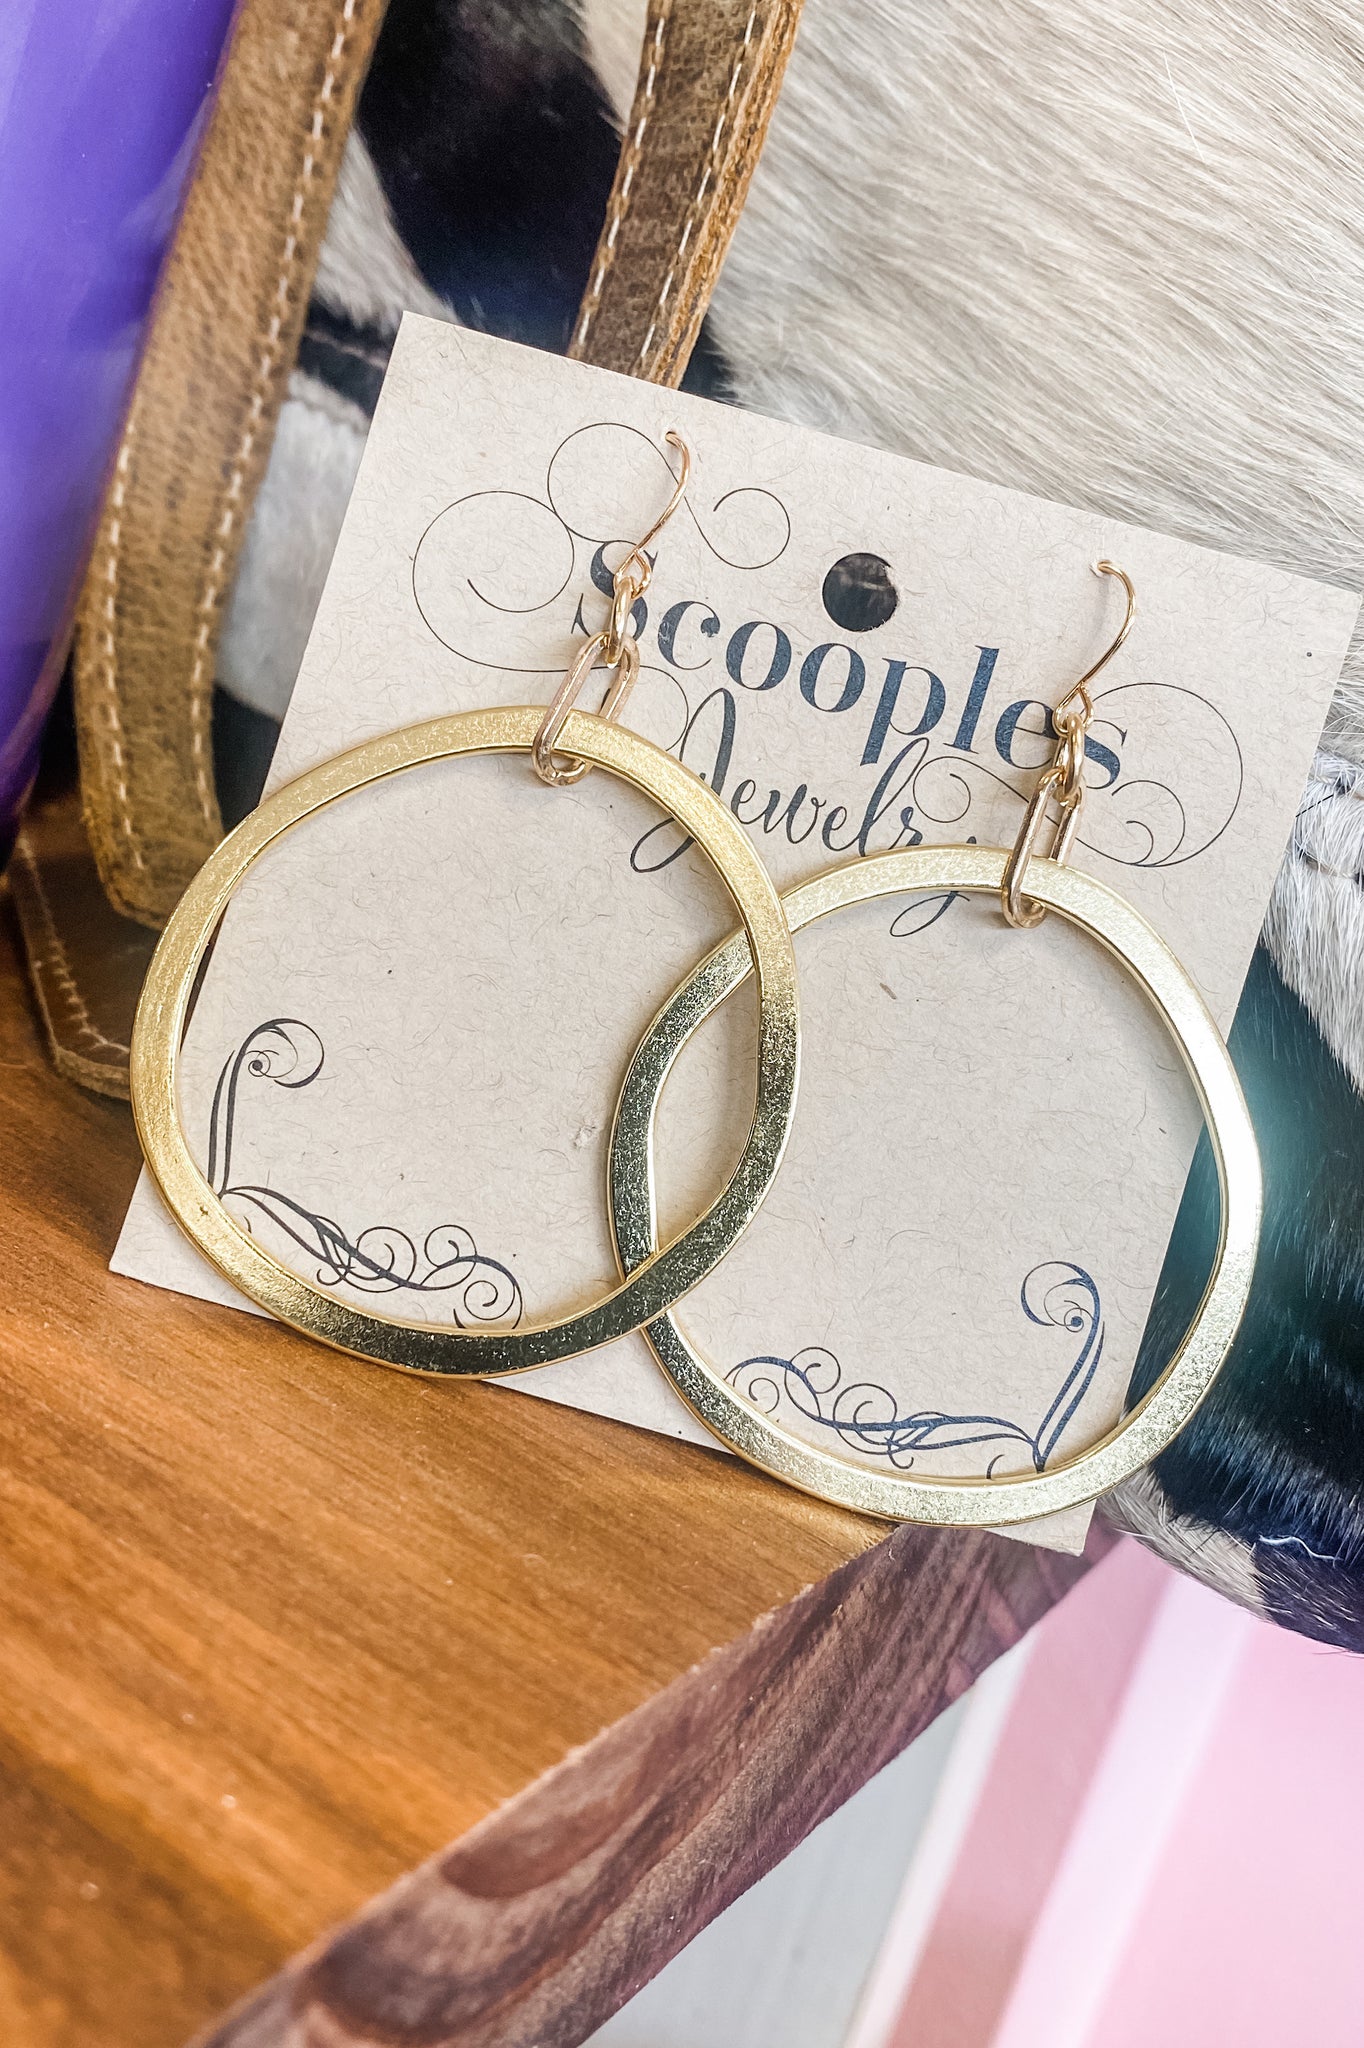 Scooples Rings & Hoops Gold Earrings